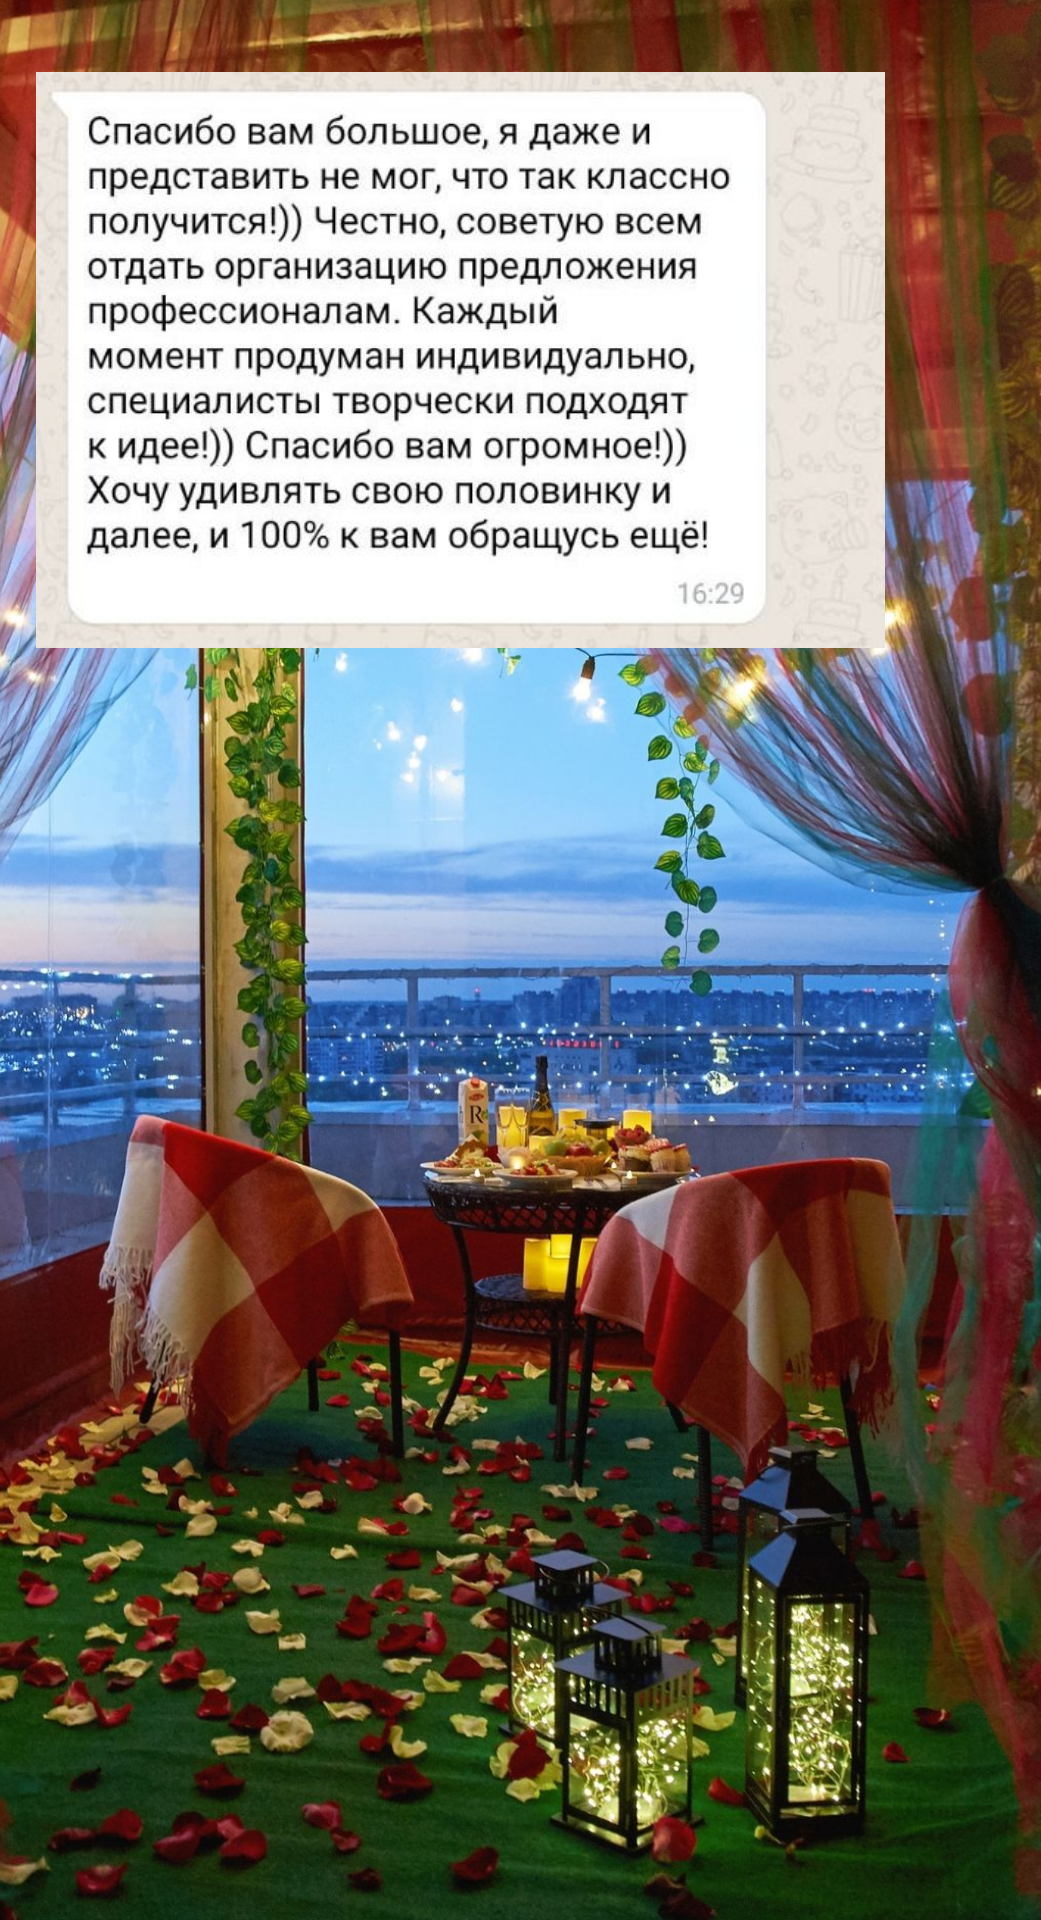 Организация предложения руки и сердца в Томске
от компании Pandaevent